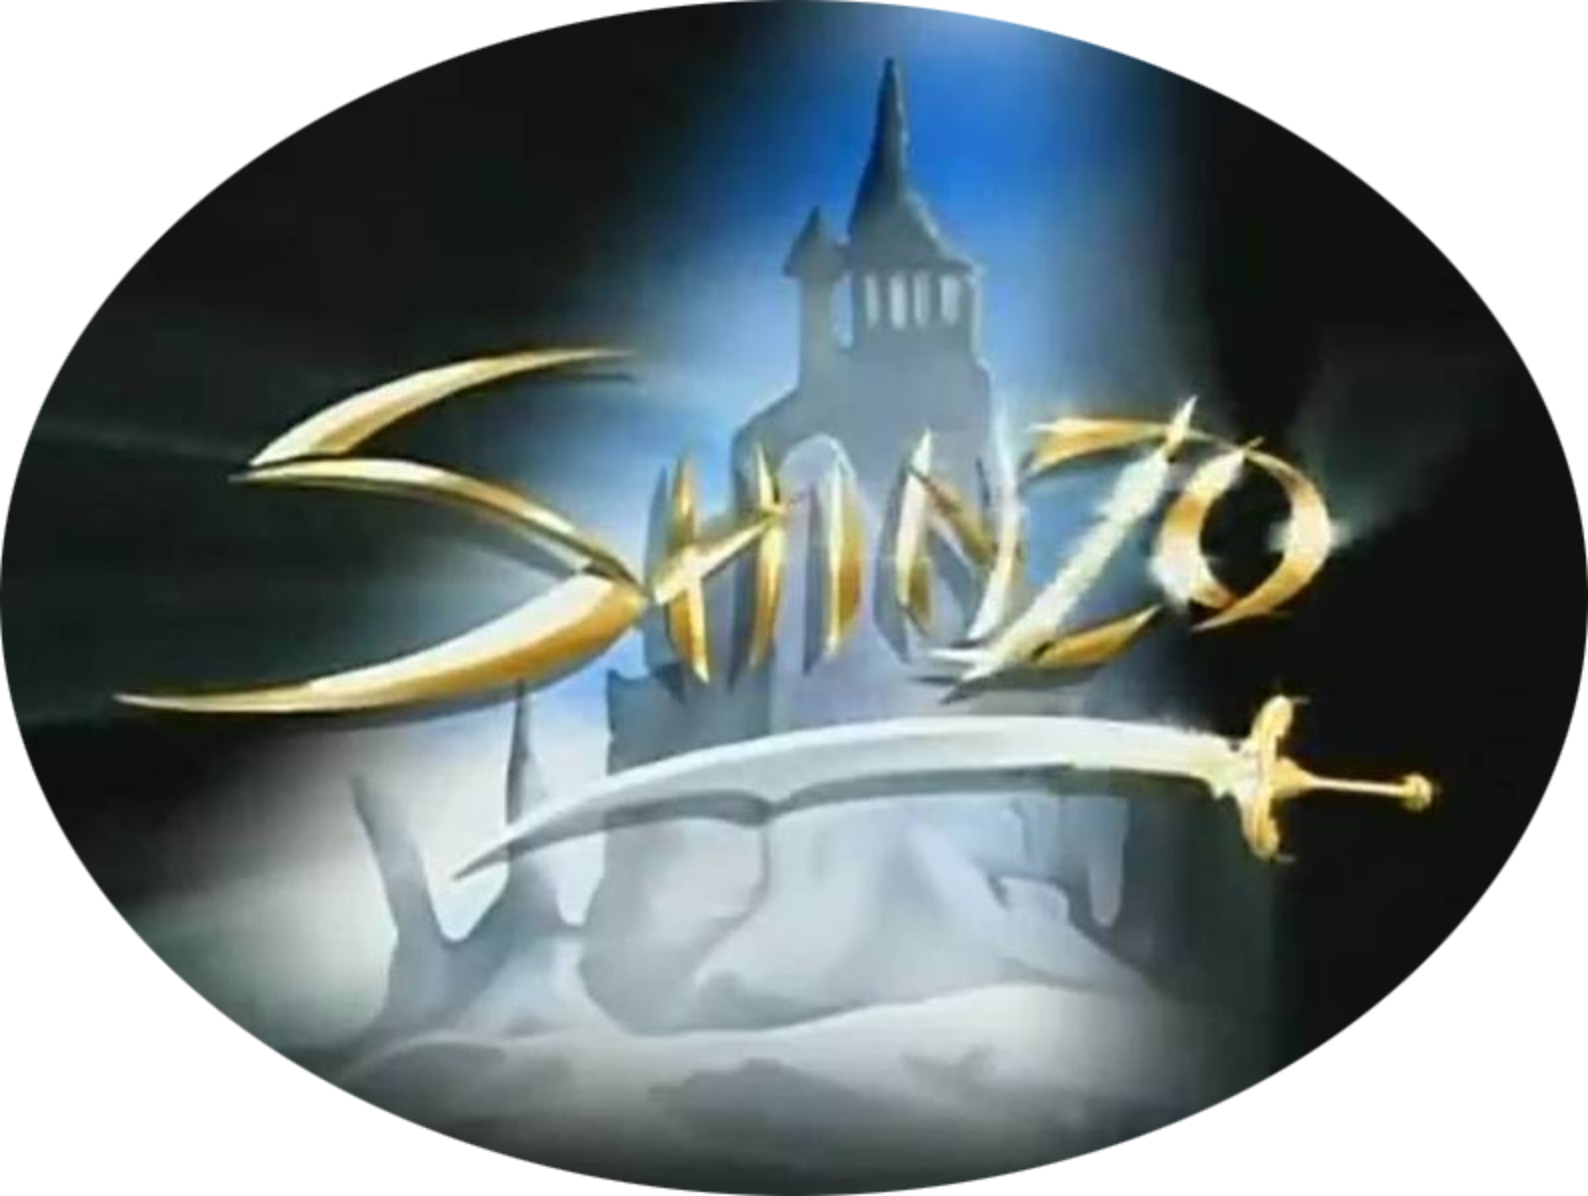 Shinzo 